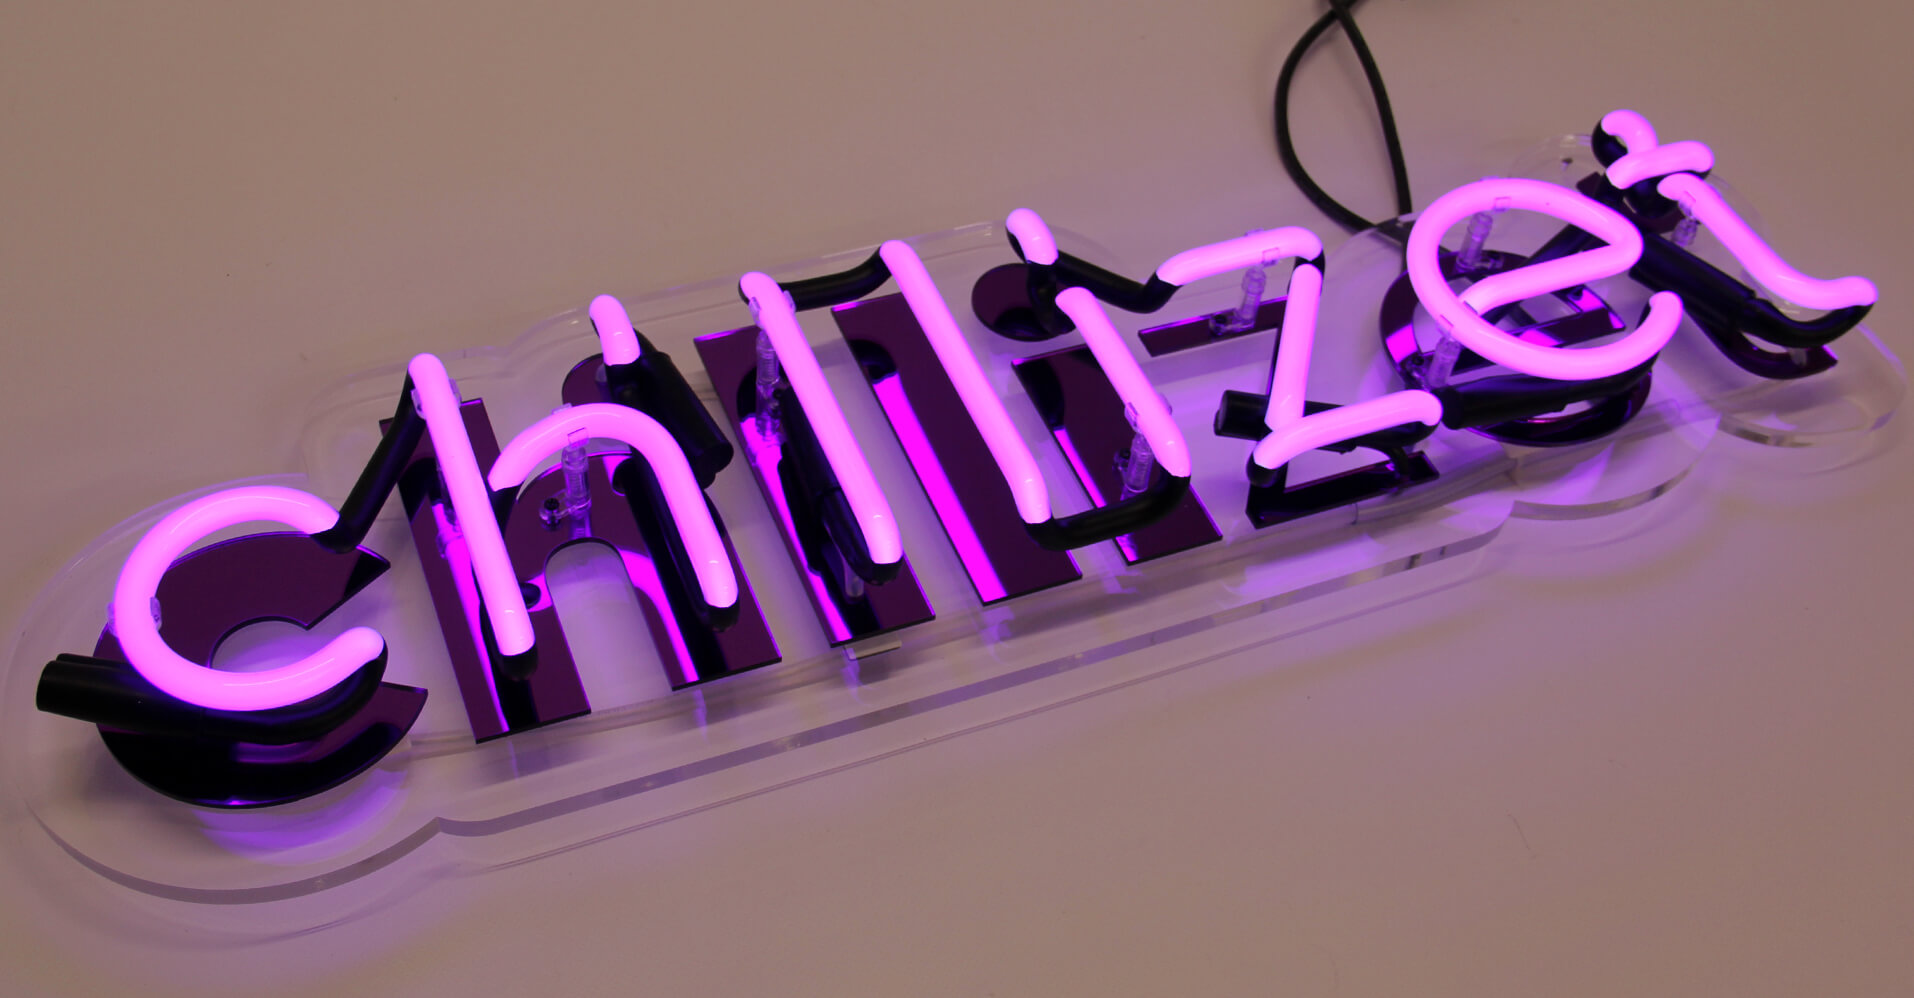 Chilizet - Neon Chilizet su richiesta, vetro in viola